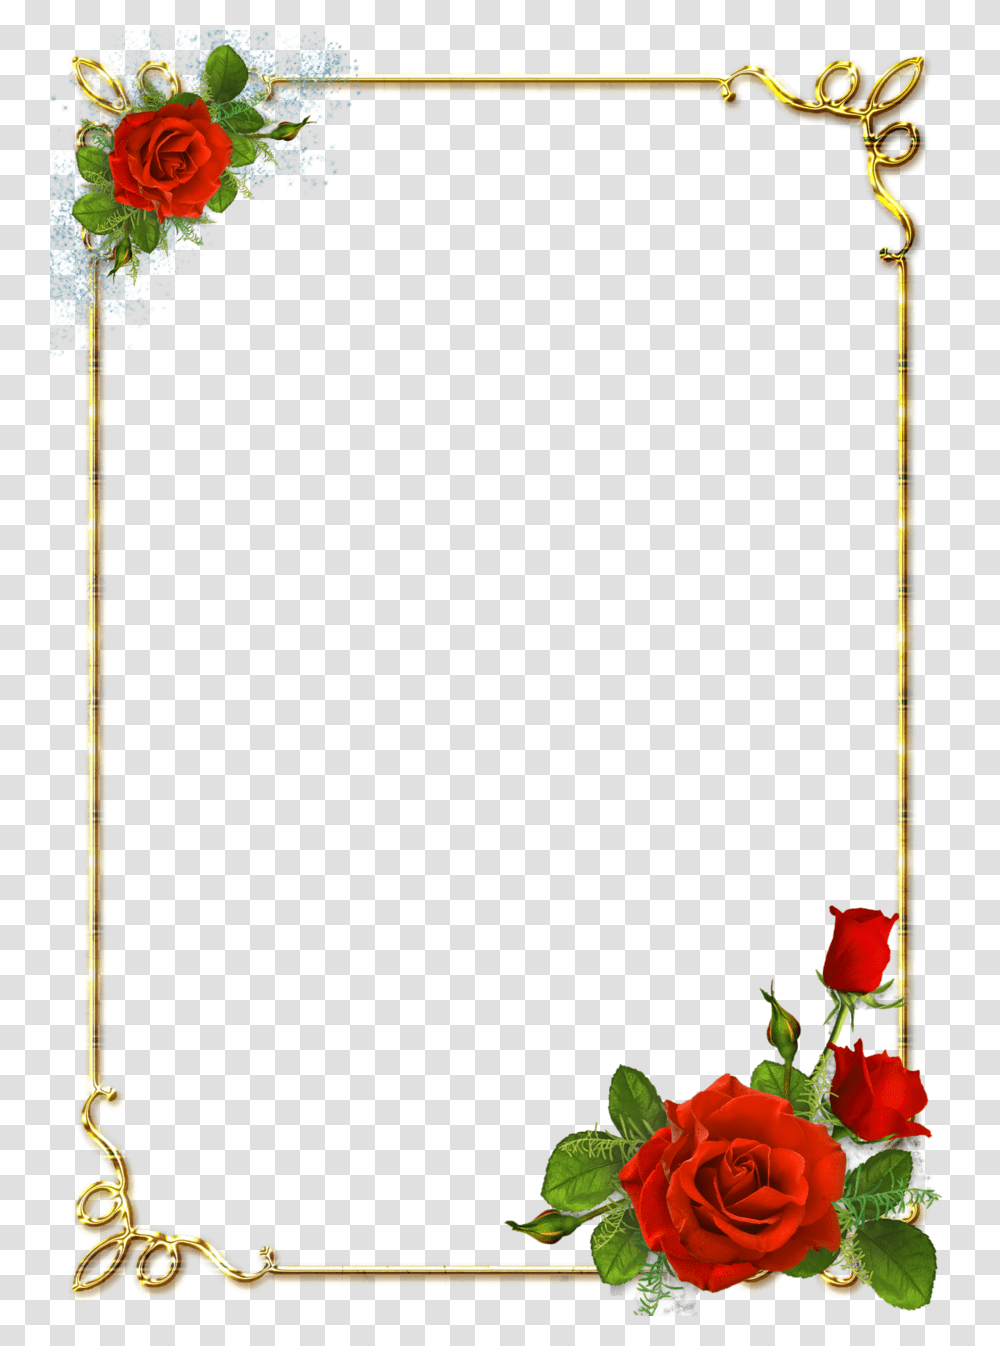 Floral Frame, Flower, Plant, Vase, Jar Transparent Png